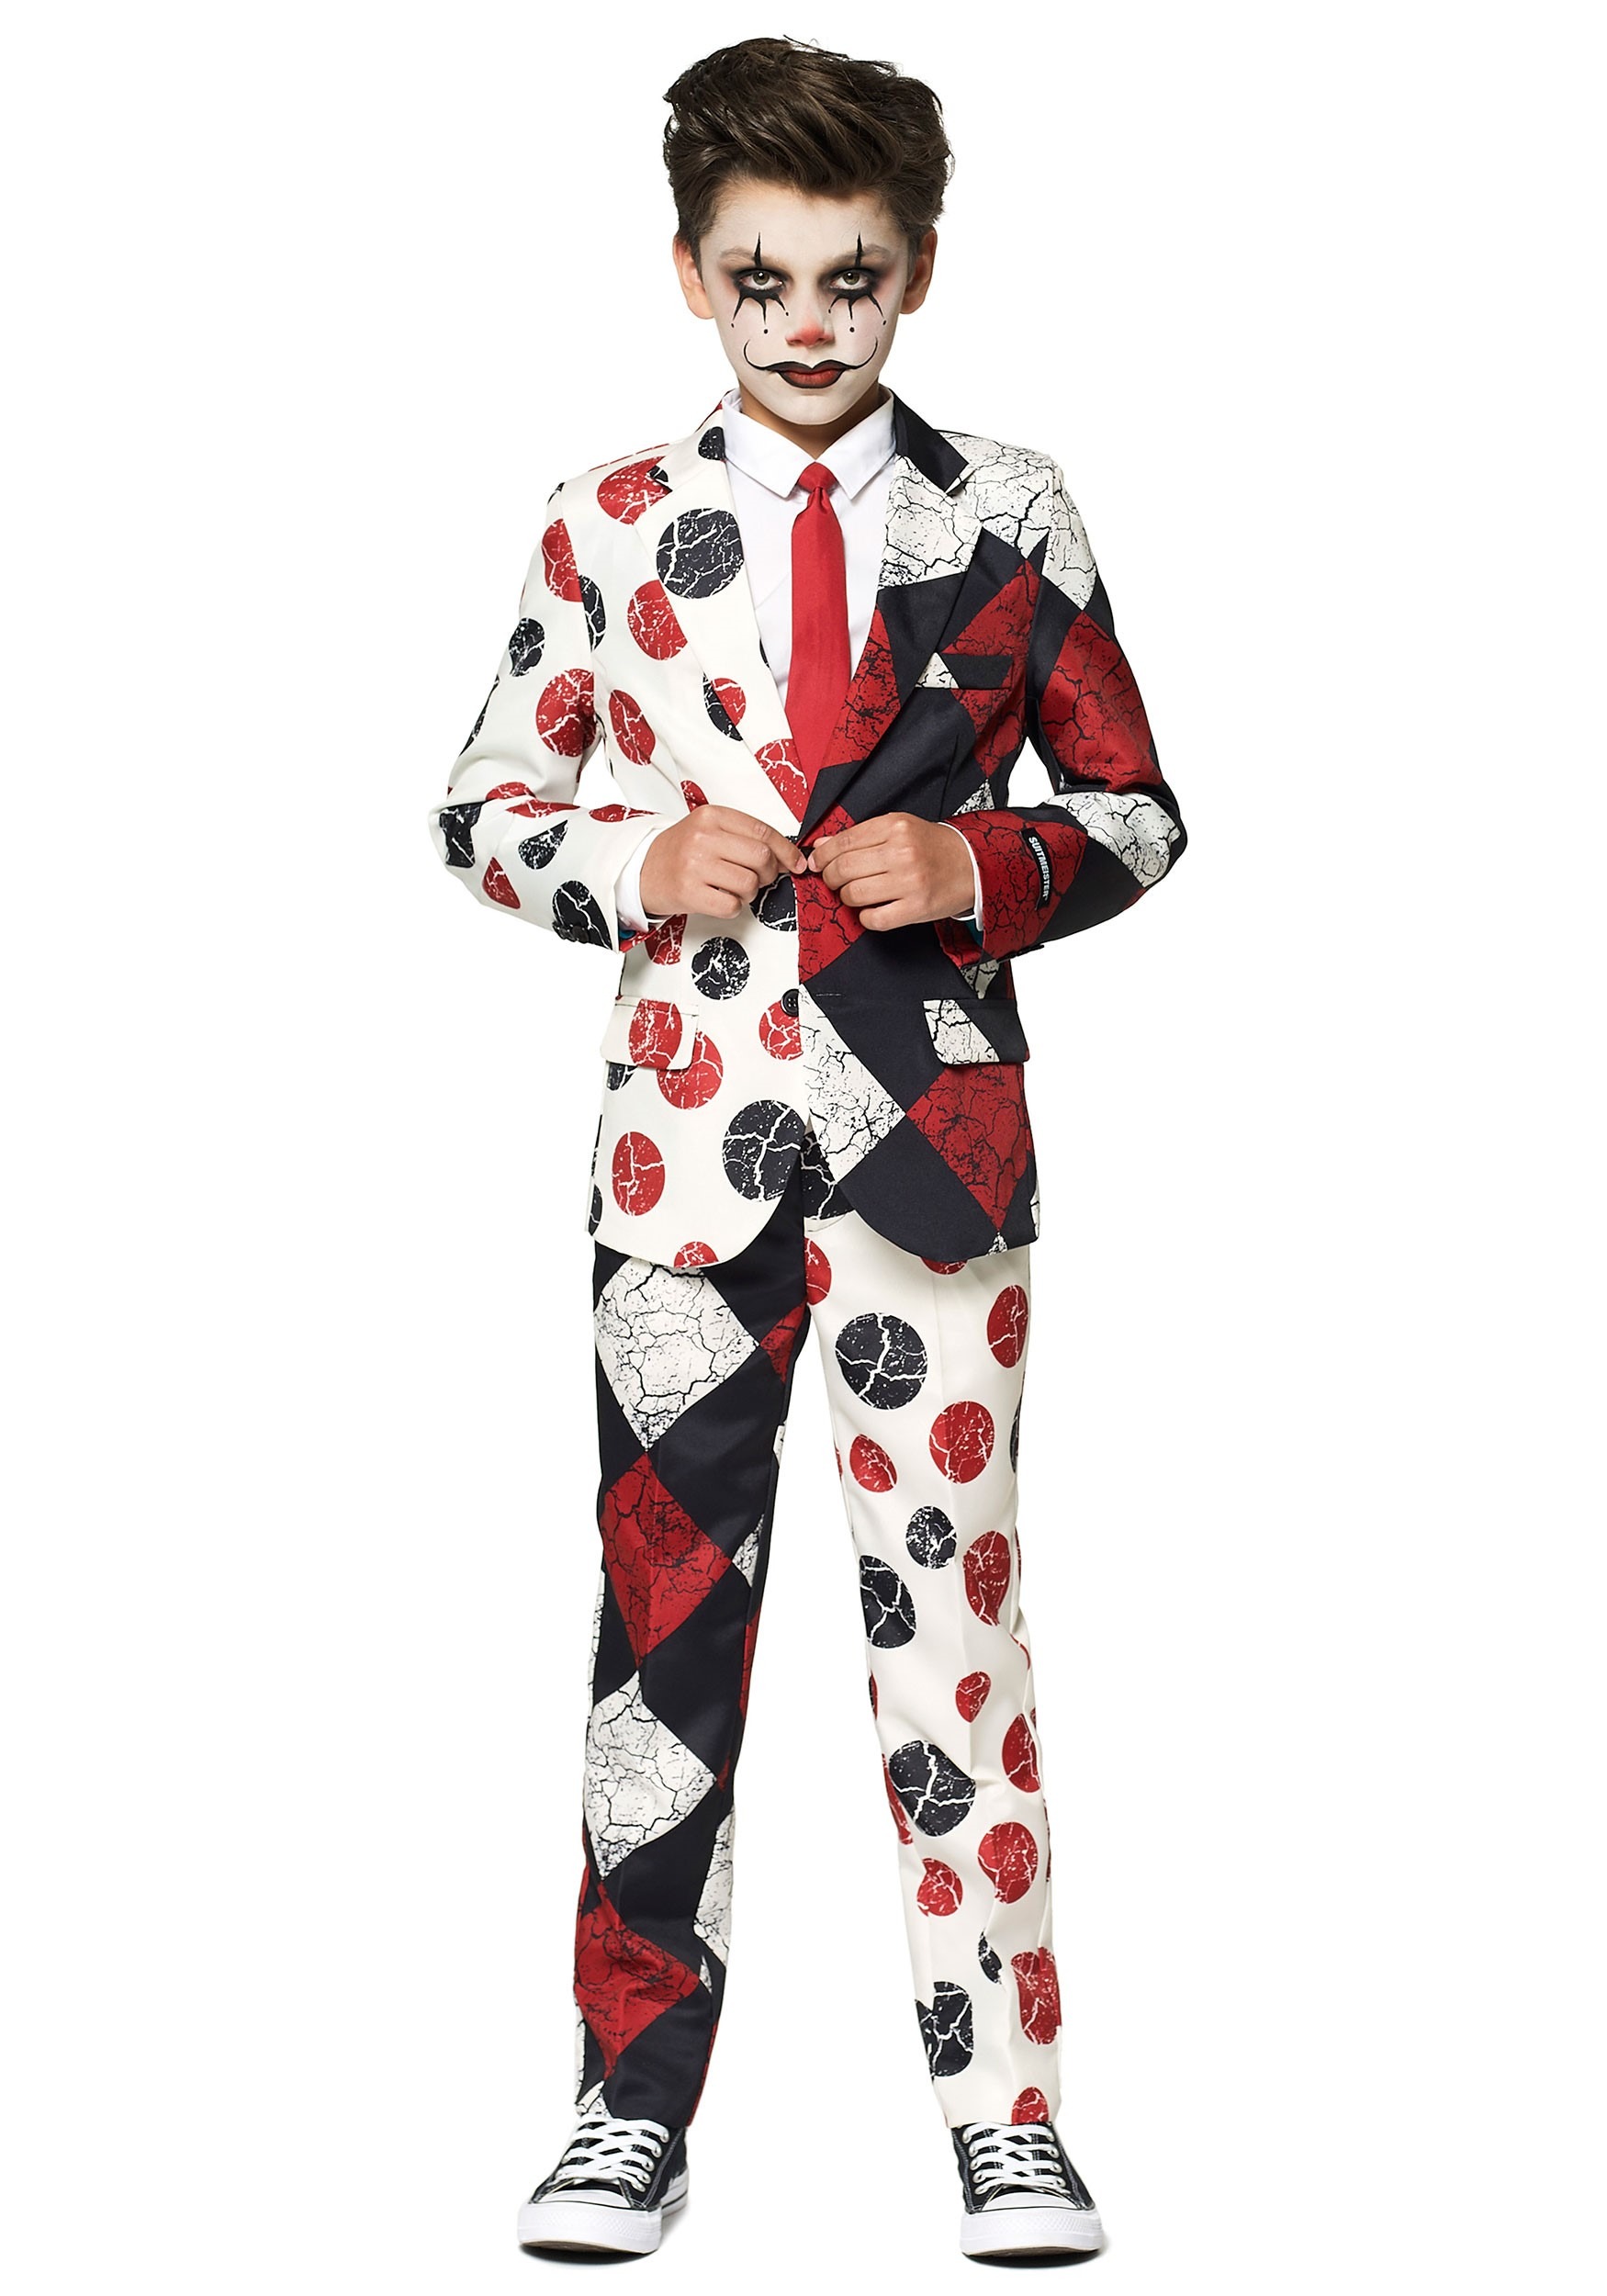 Suitmeister Clown: Boy's Suit